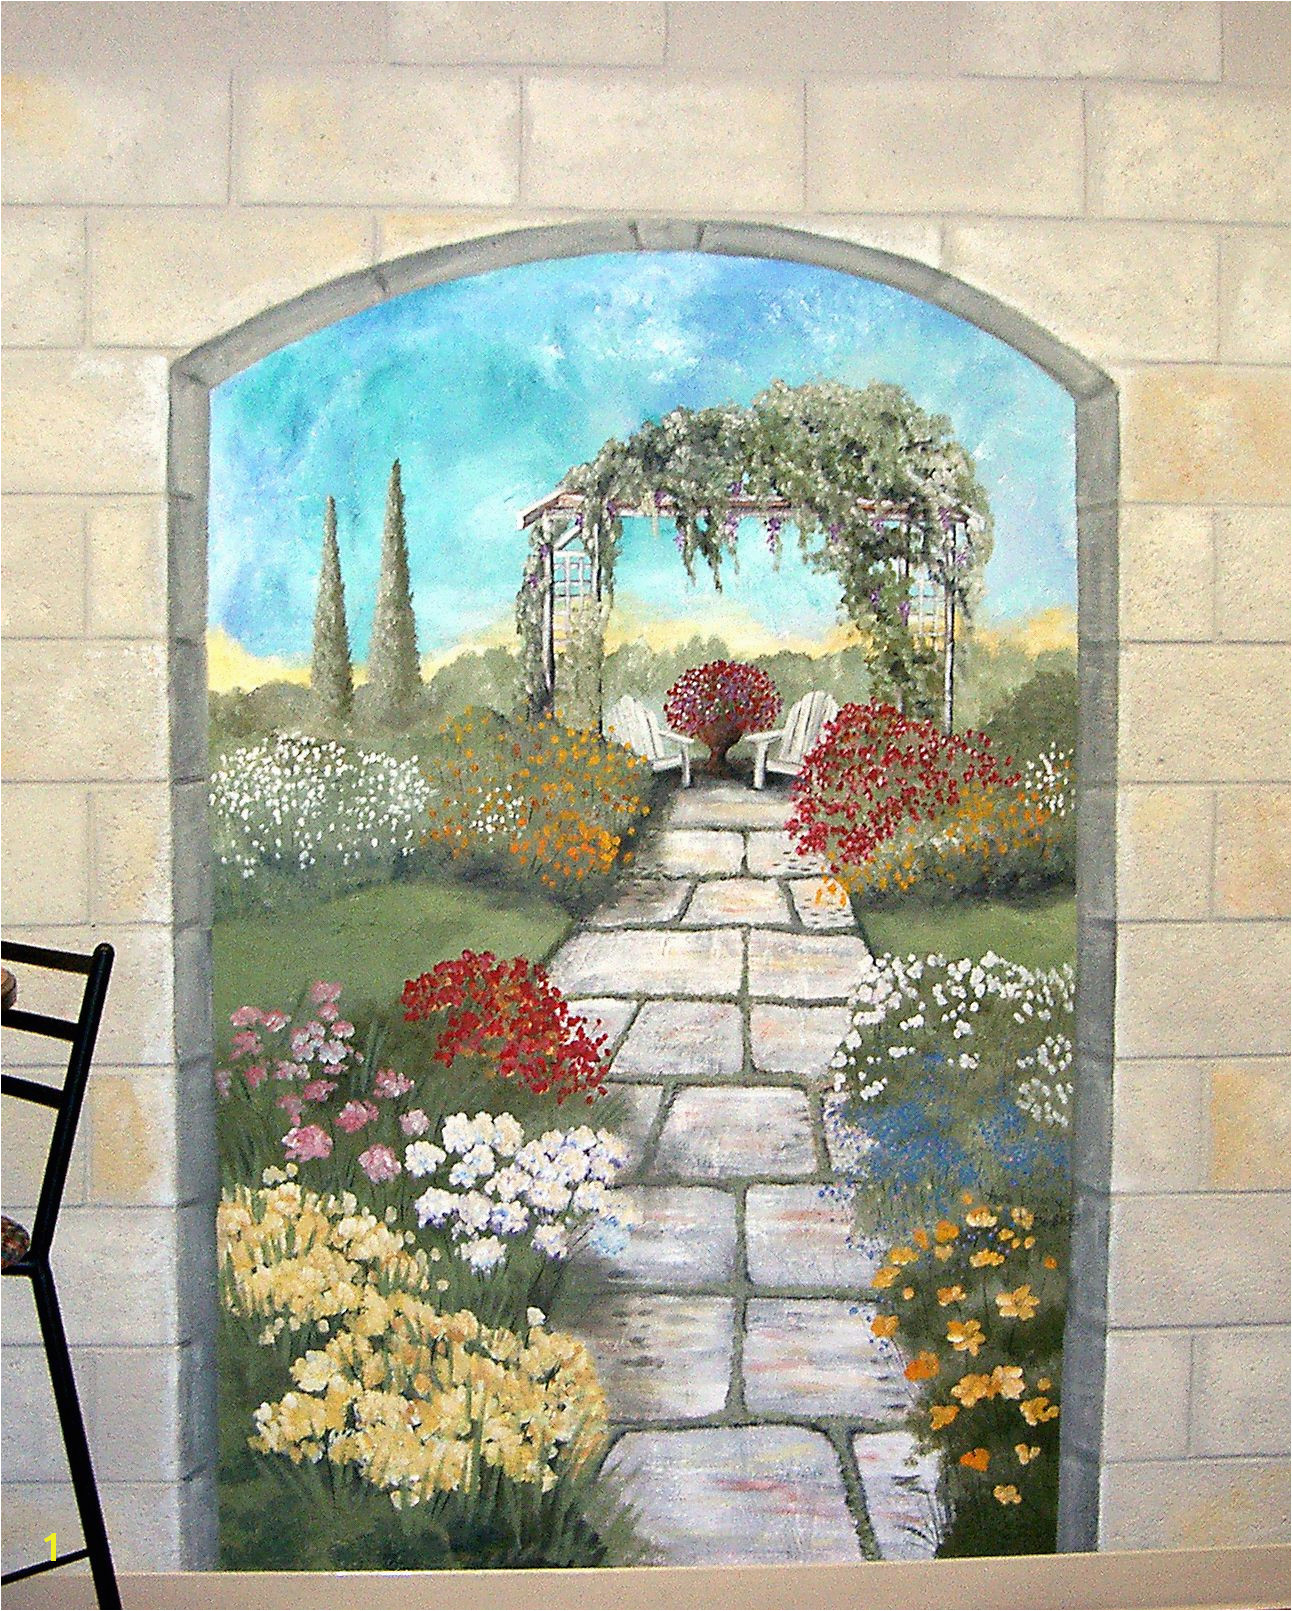 Wall Mural Painters Garden Mural On A Cement Block Wall Colorful Flower Garden Mural